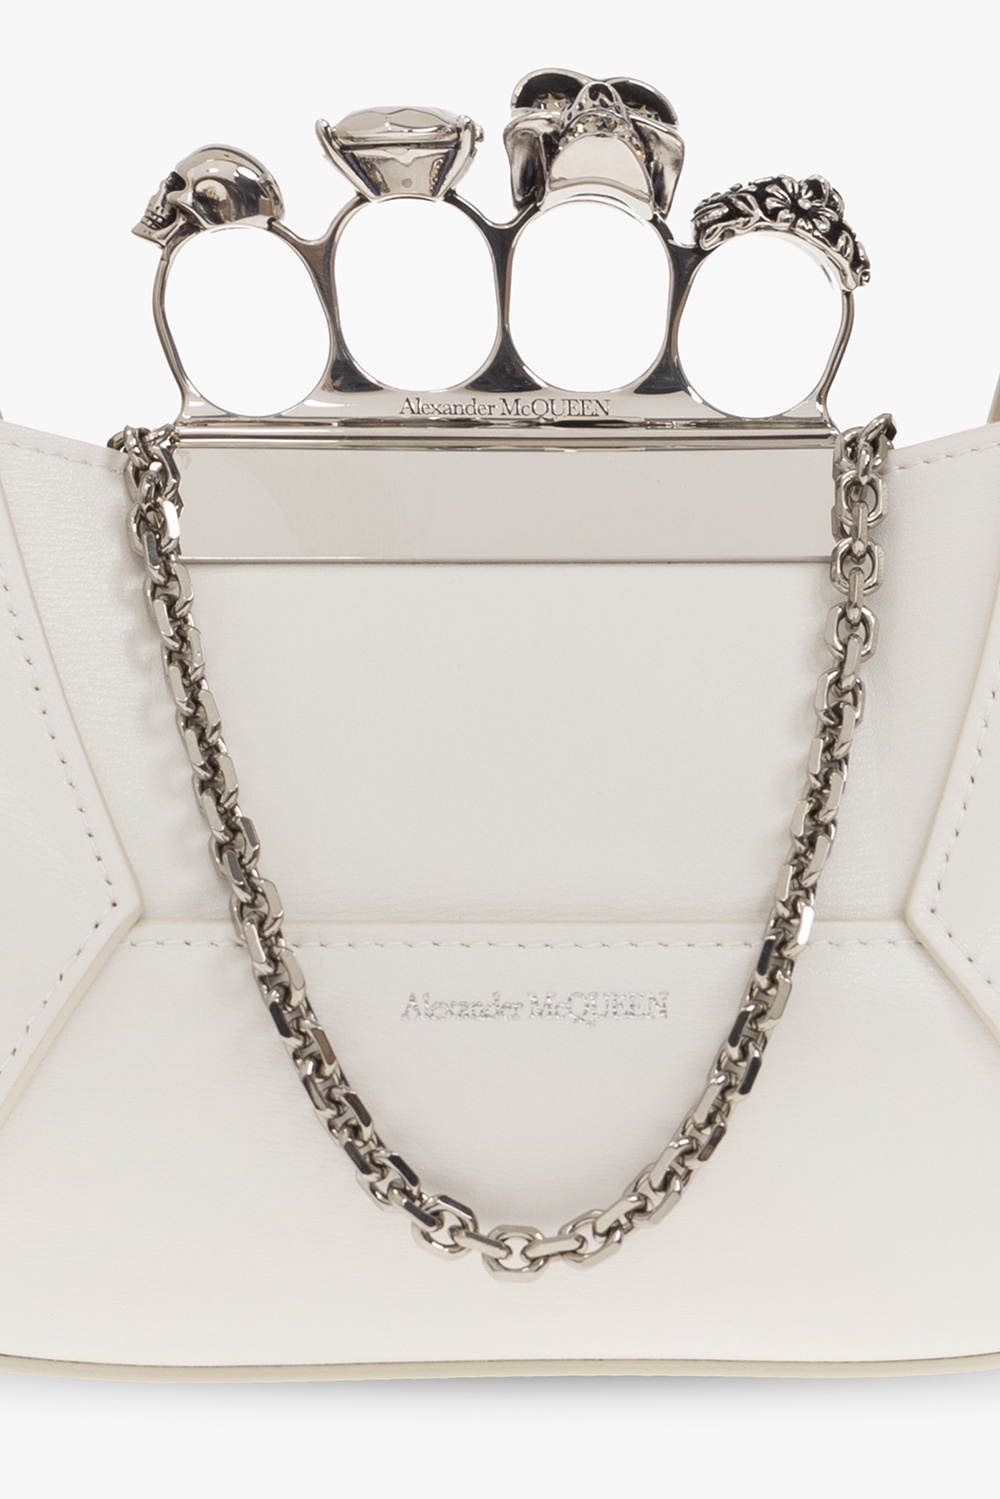 Alexander McQueen 'Jewelled Hobo Mini' handbag